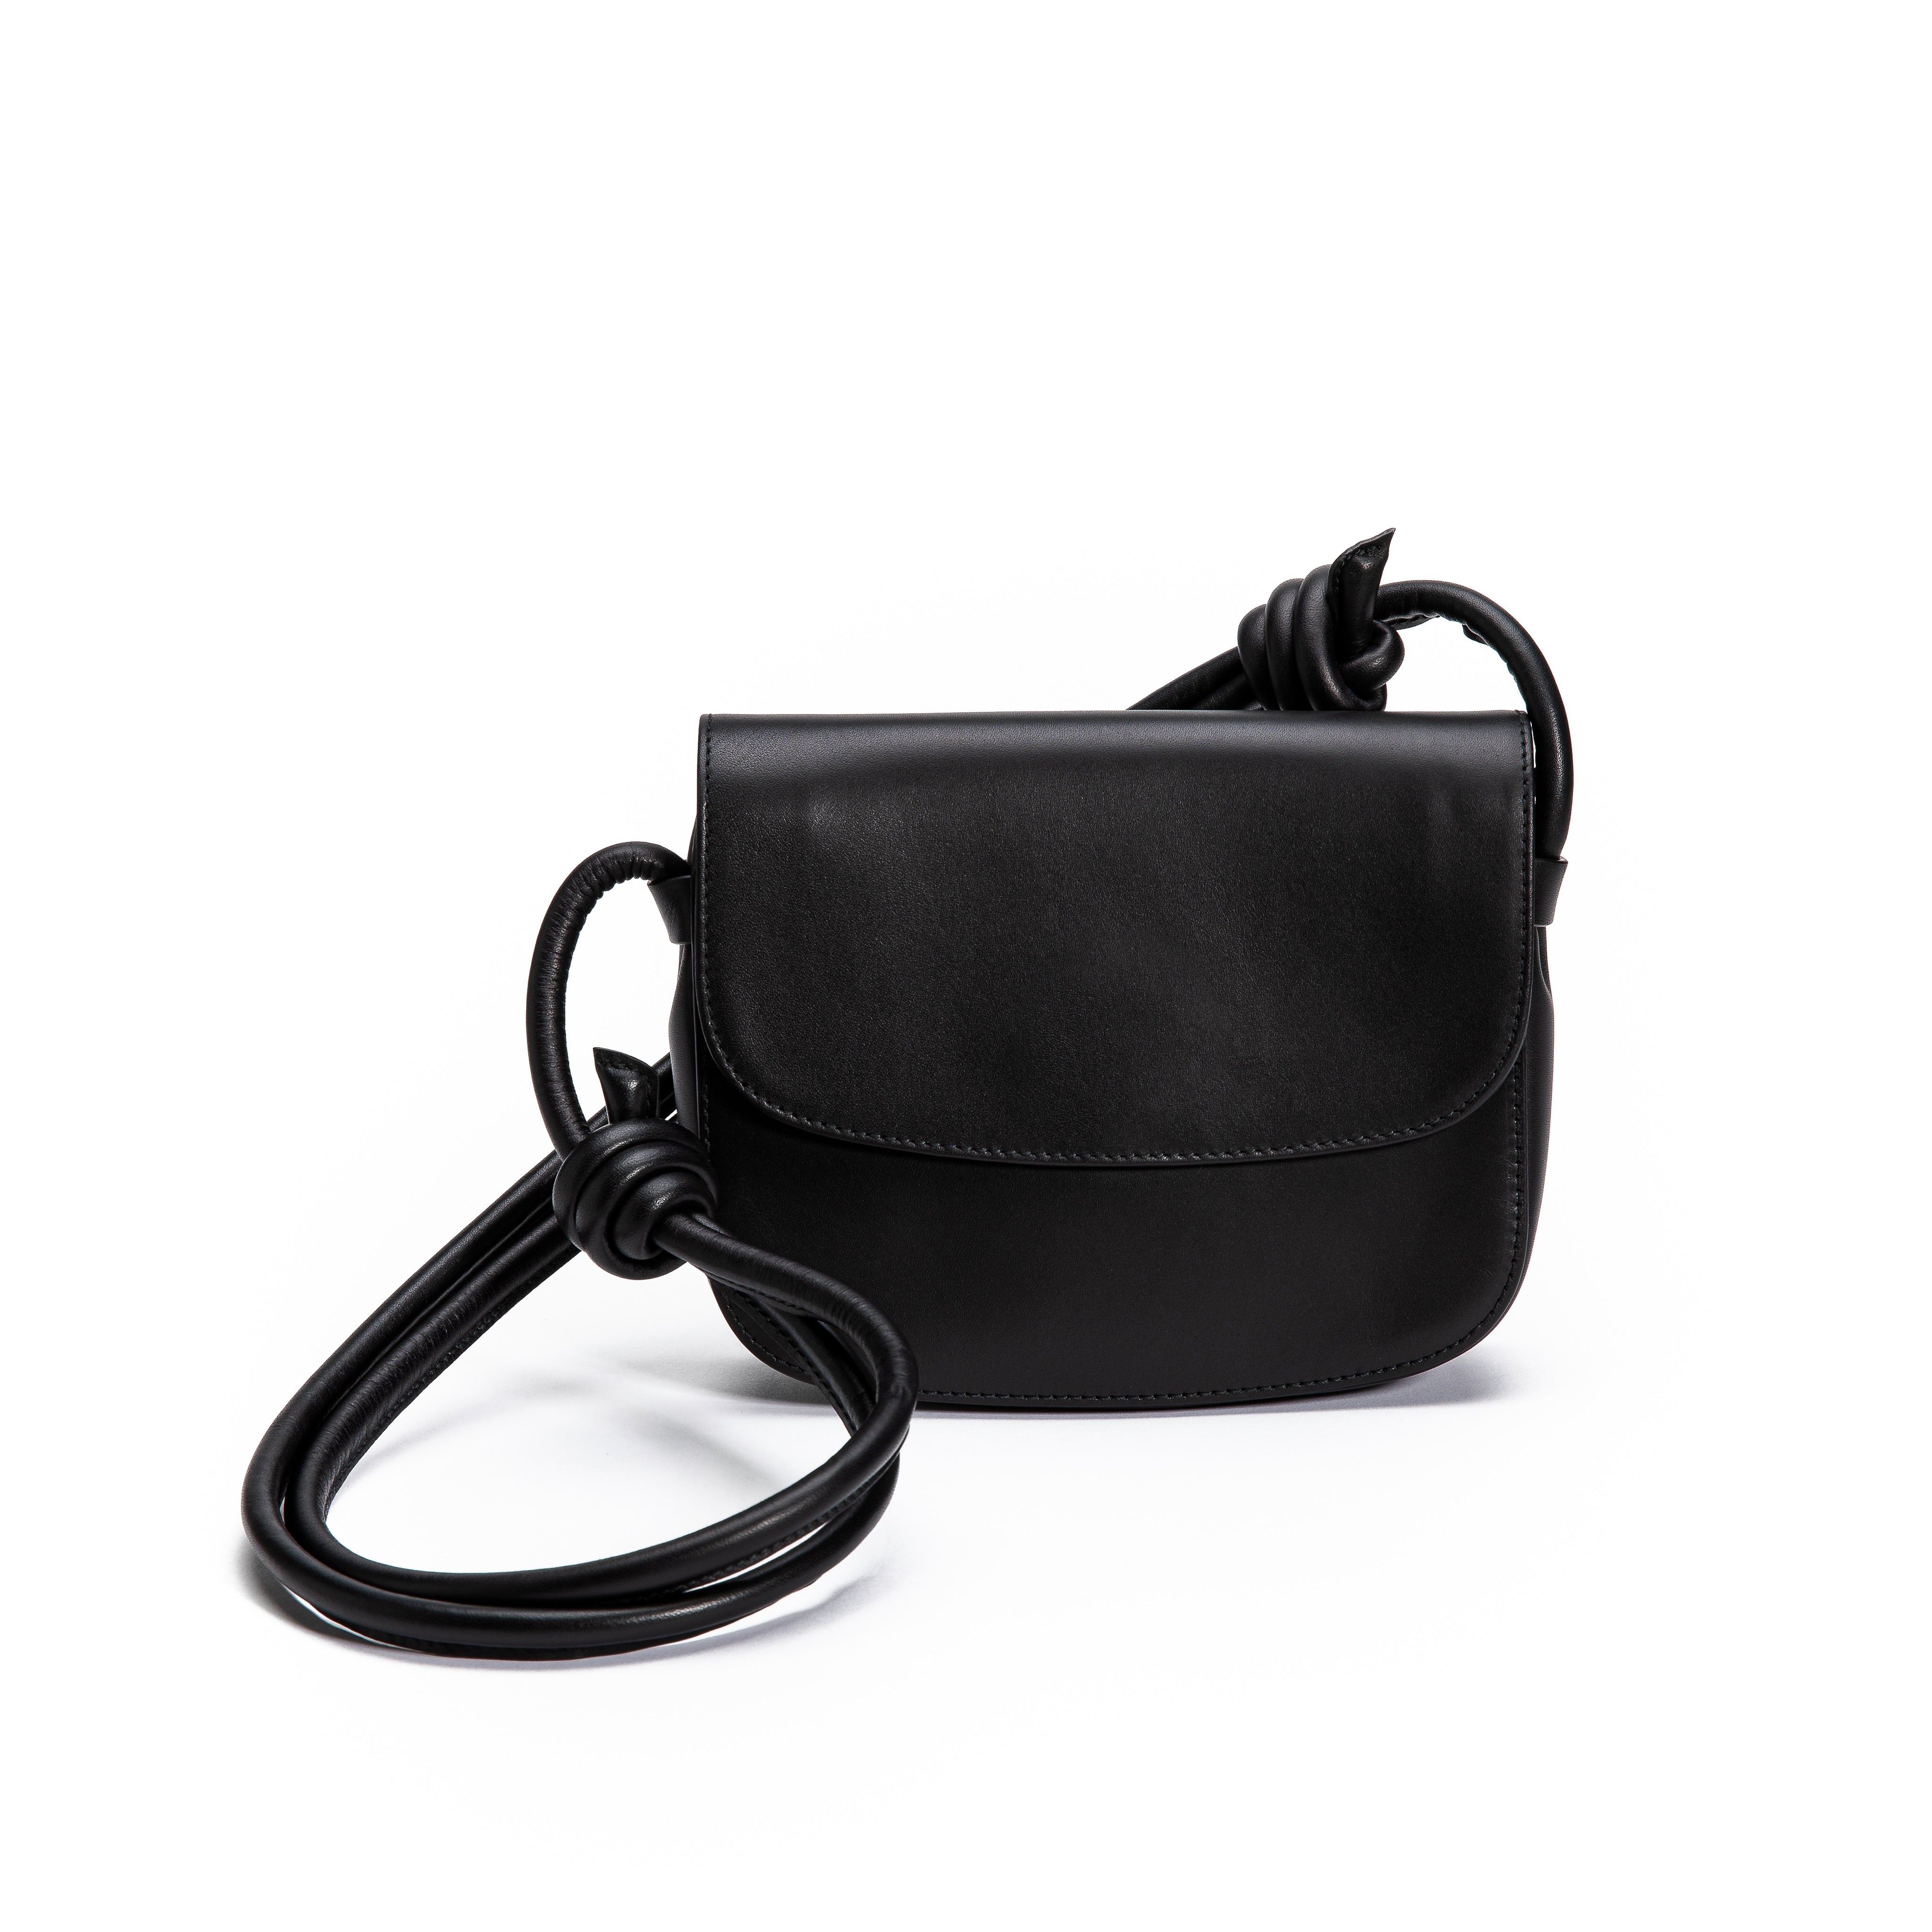 Lucia Mini Handbag - Black